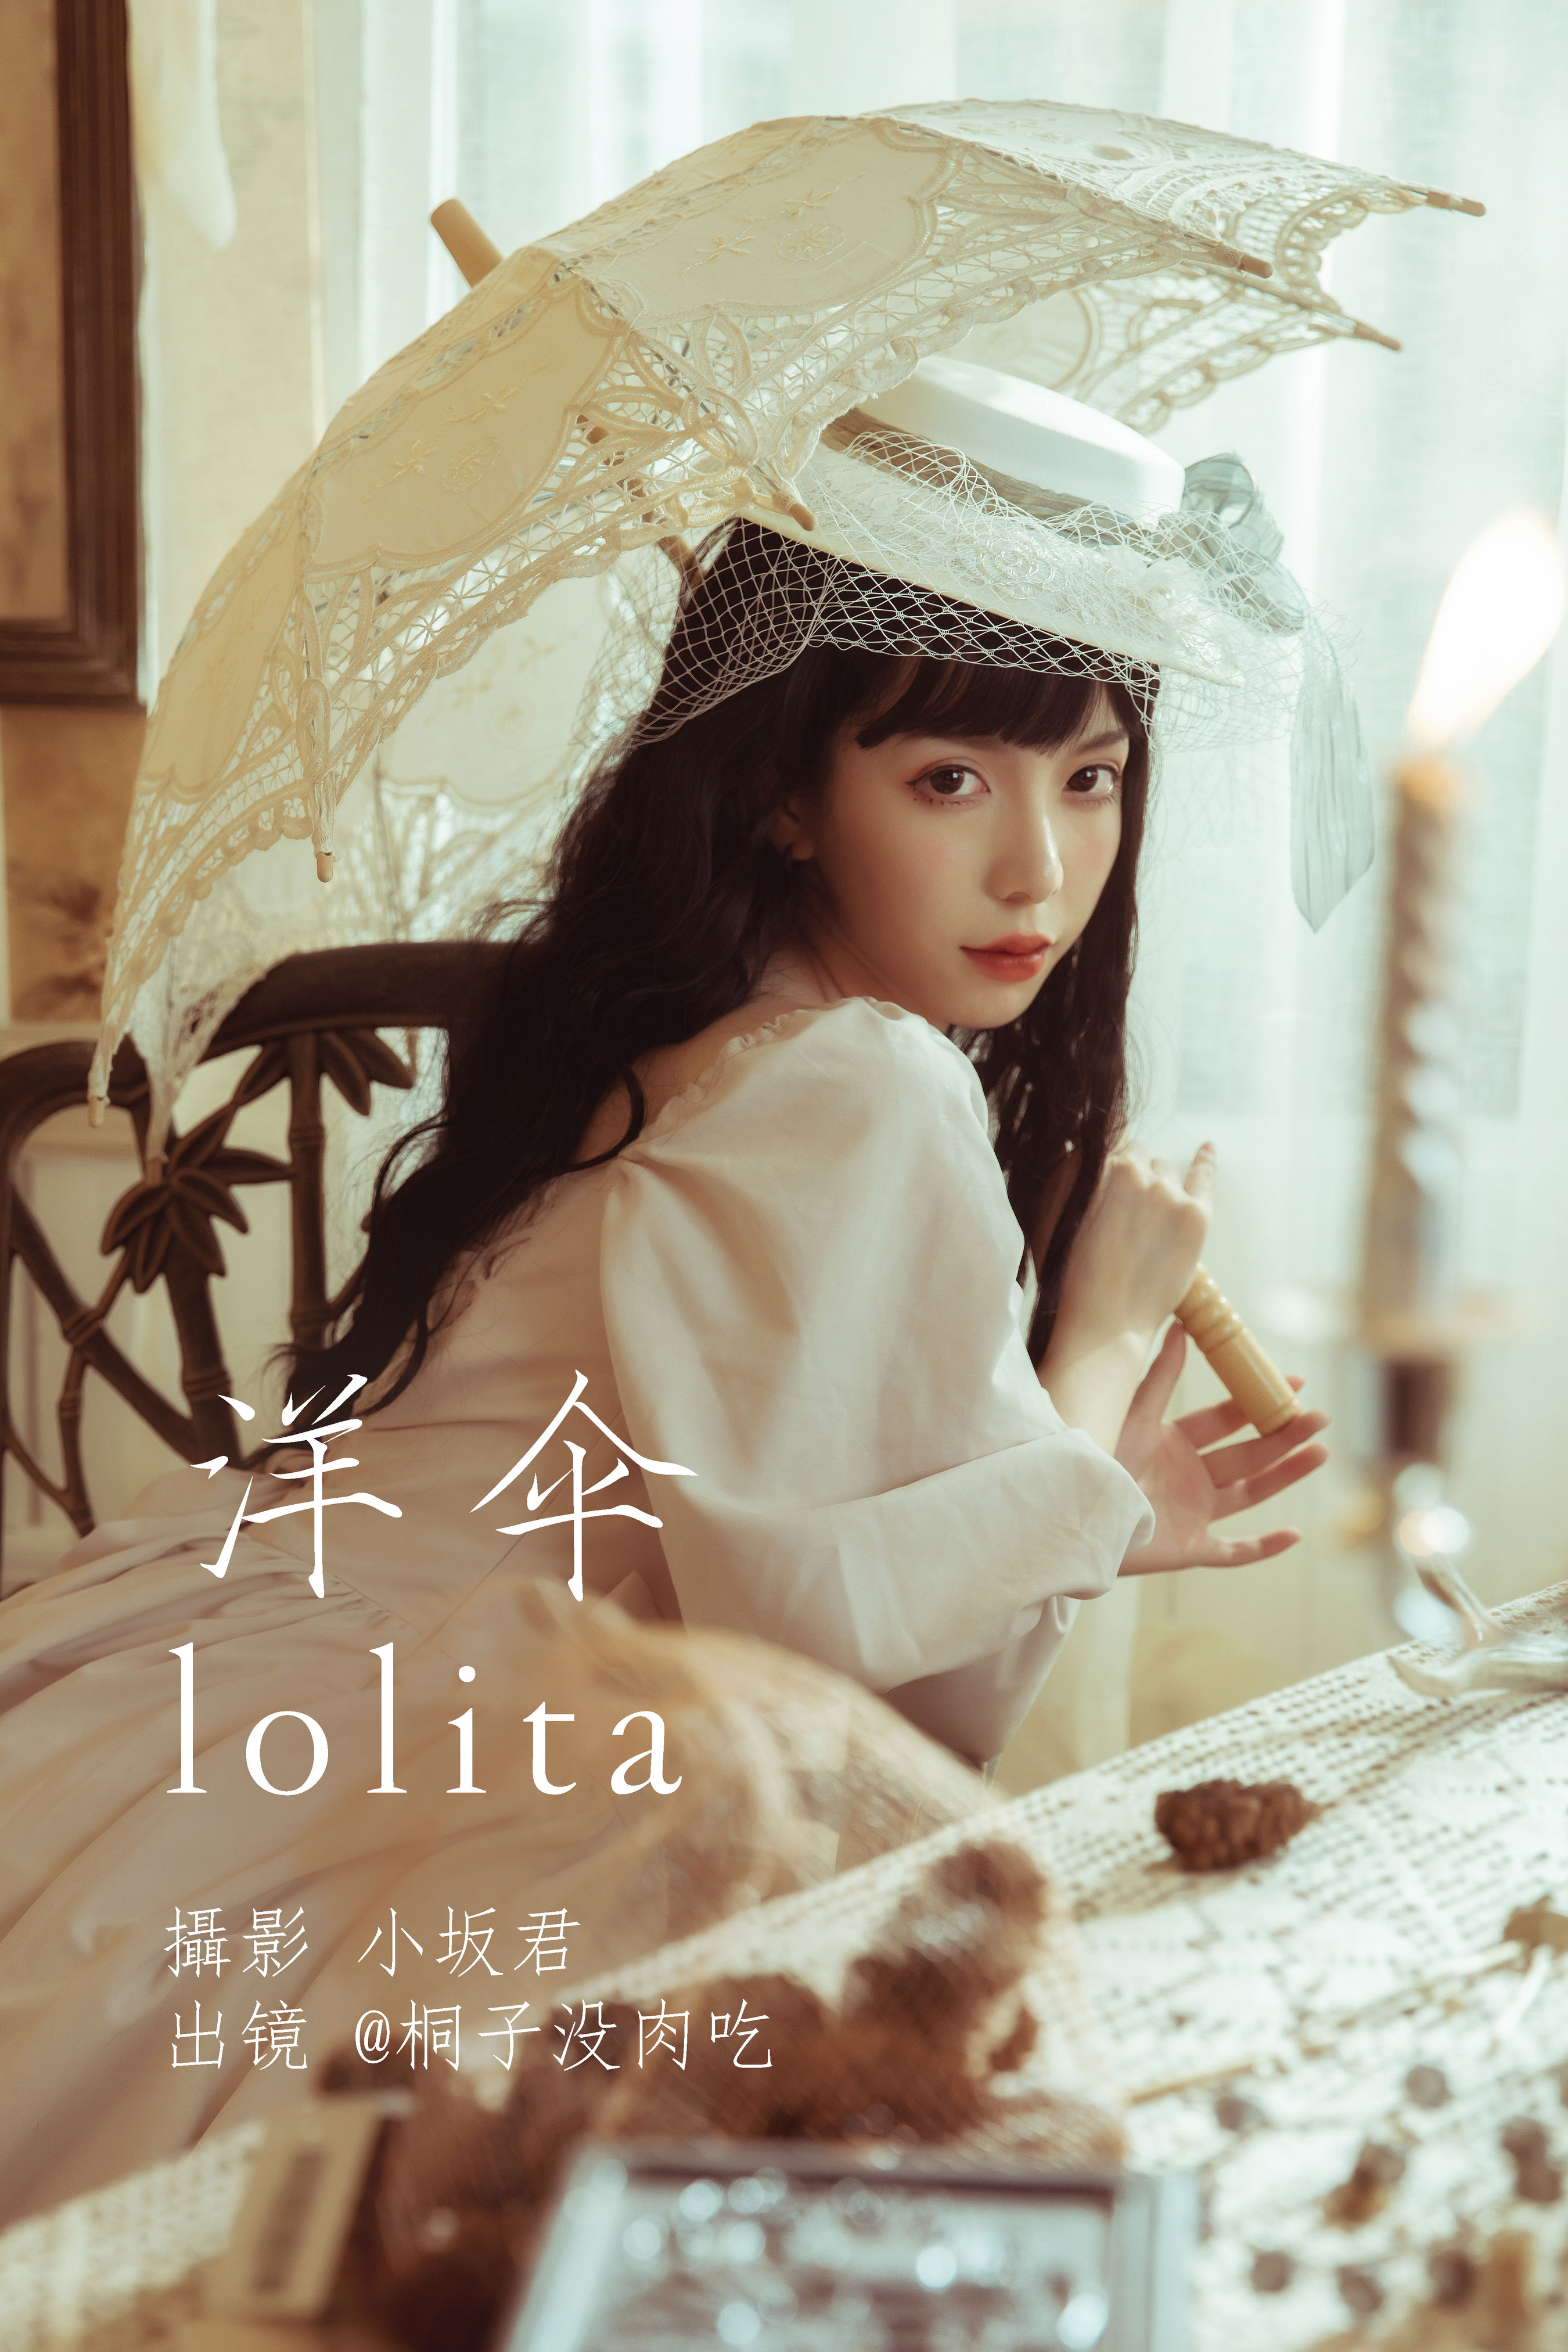 小坂君_桐子没肉吃《洋伞lolita》美图作品图片1